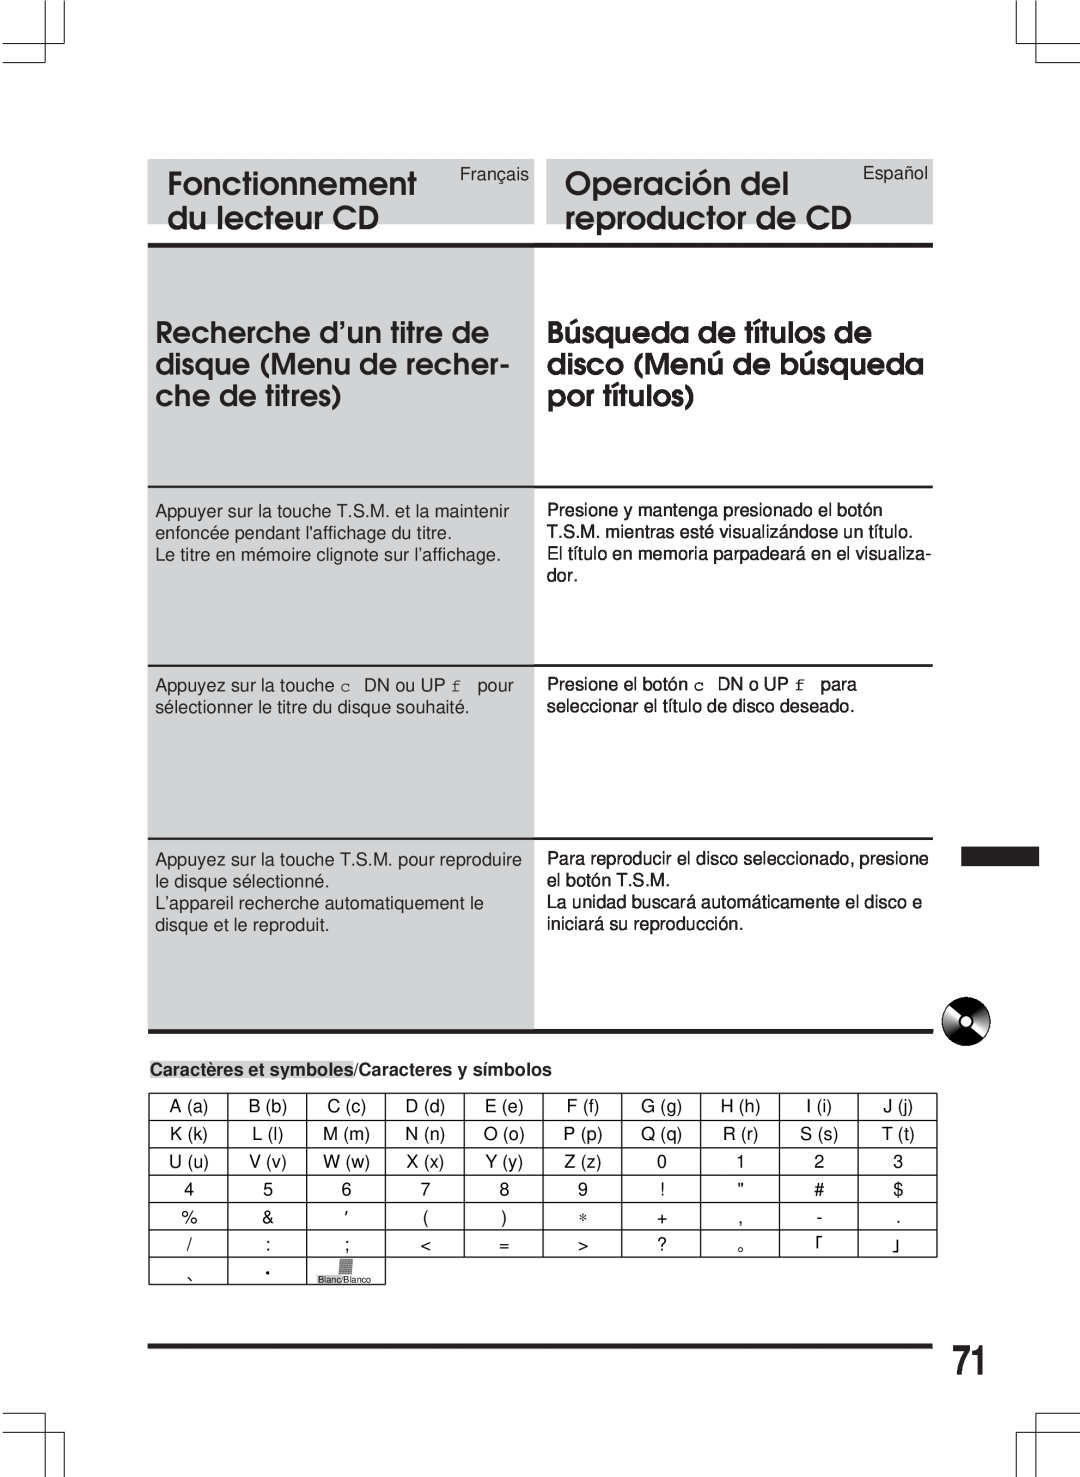 Alpine MDA-W890 Recherche d’un titre de disque Menu de recher- che de titres, Fonctionnement, Operación del, du lecteur CD 